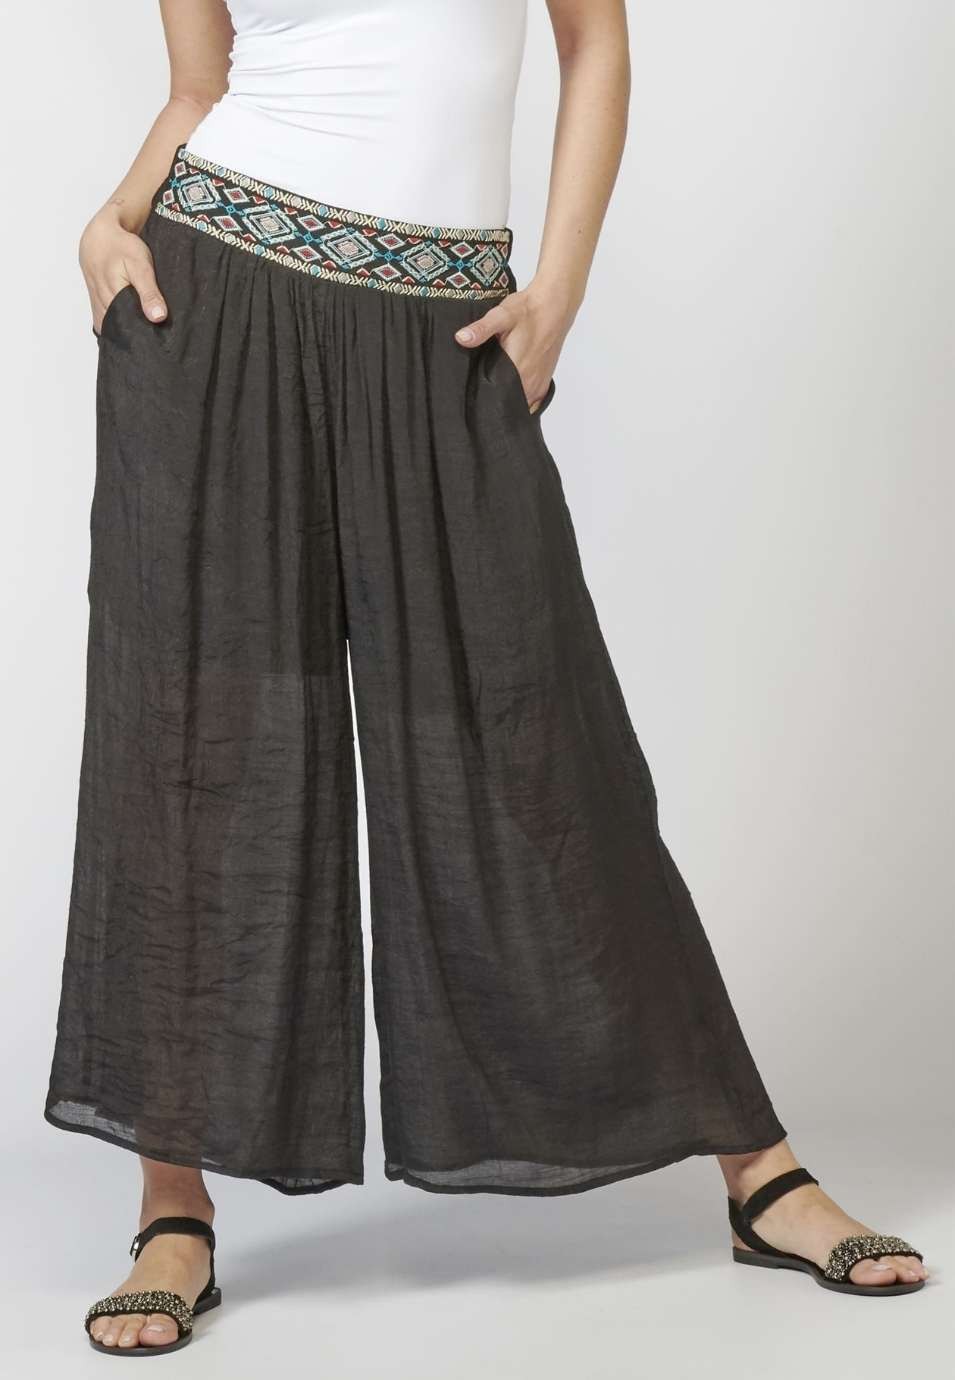 Pantalón de Mujer straigth largo elástico con fajín y Detalle Bordado Étnico color Negro 3